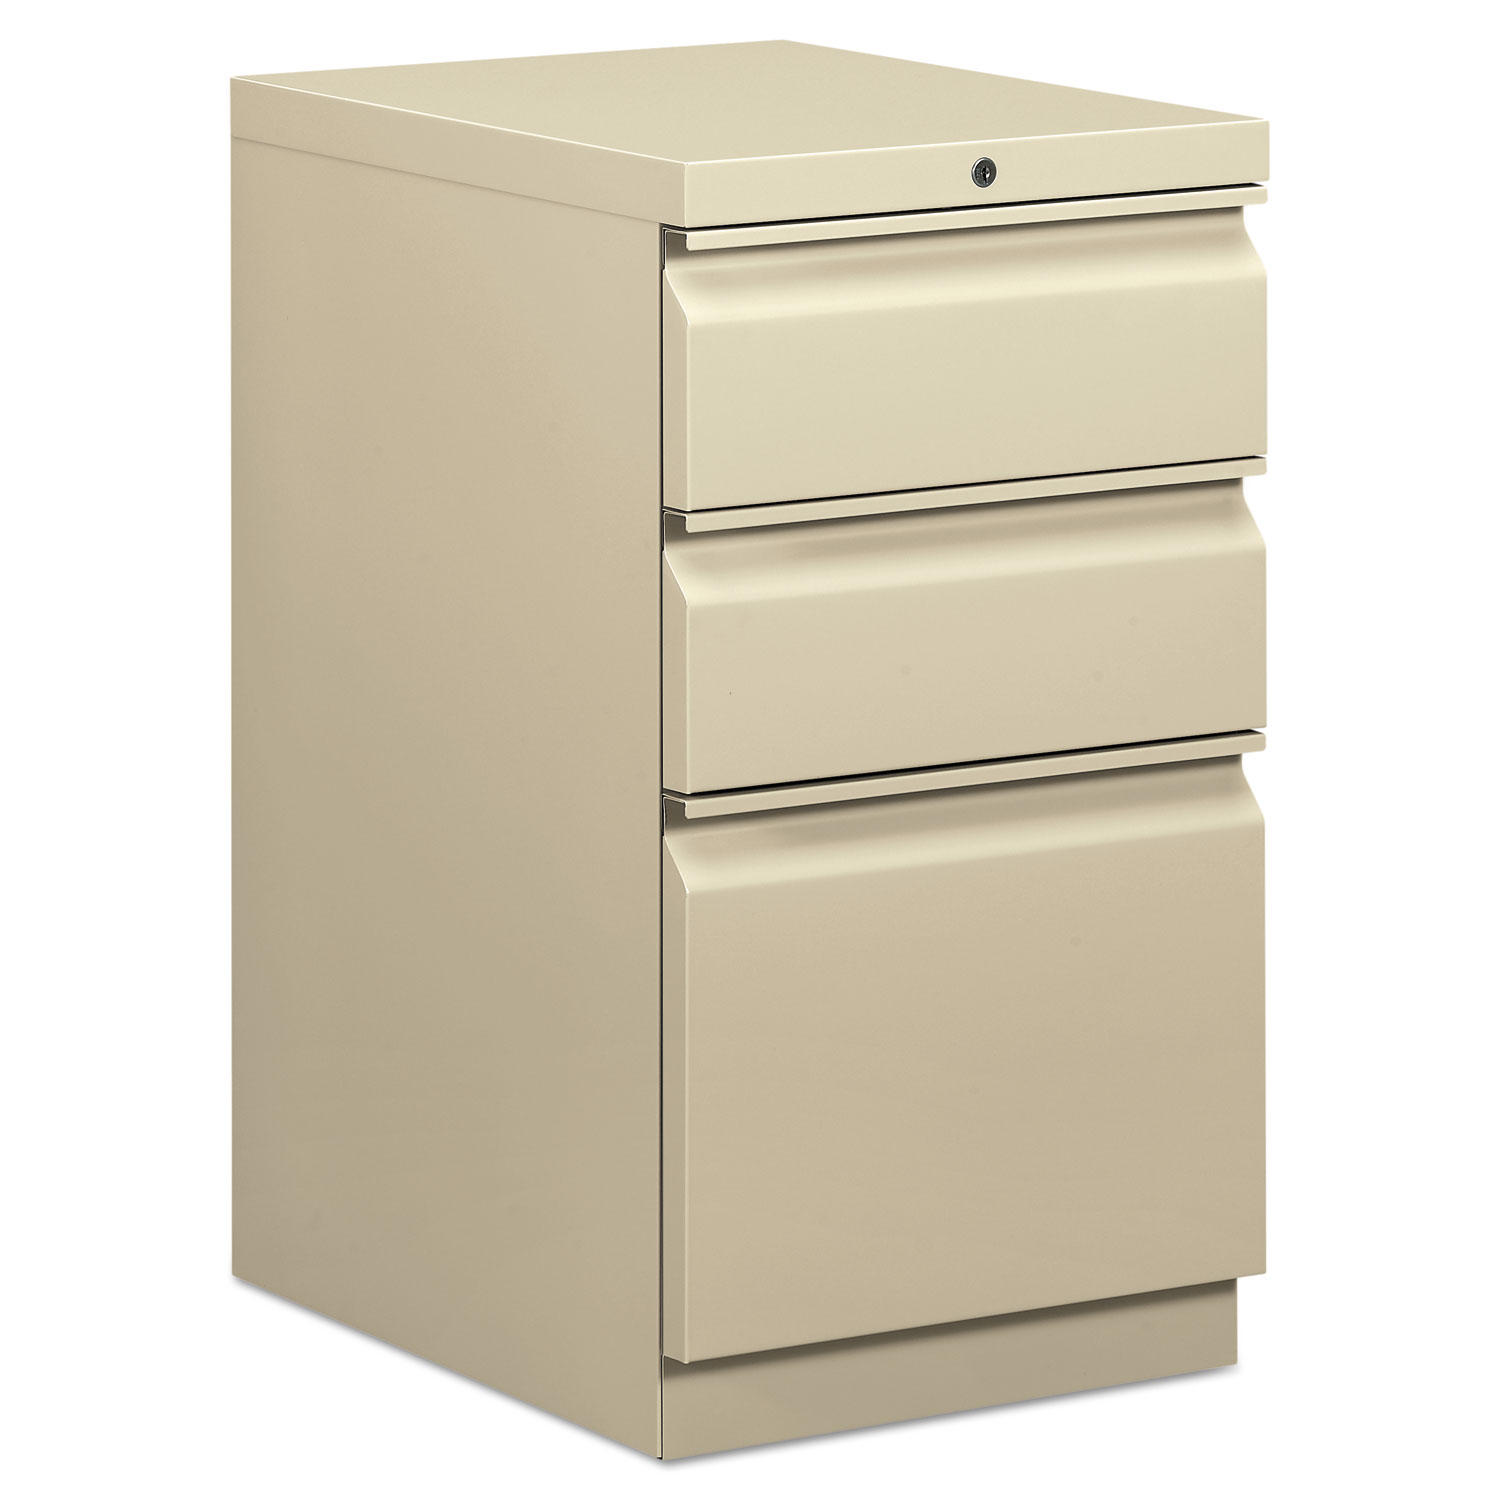  HON HBMP2B.L Mobile Box/Box/File Pedestal, 15w x 20d x 28h, Putty (BSXHBMP2BL) 